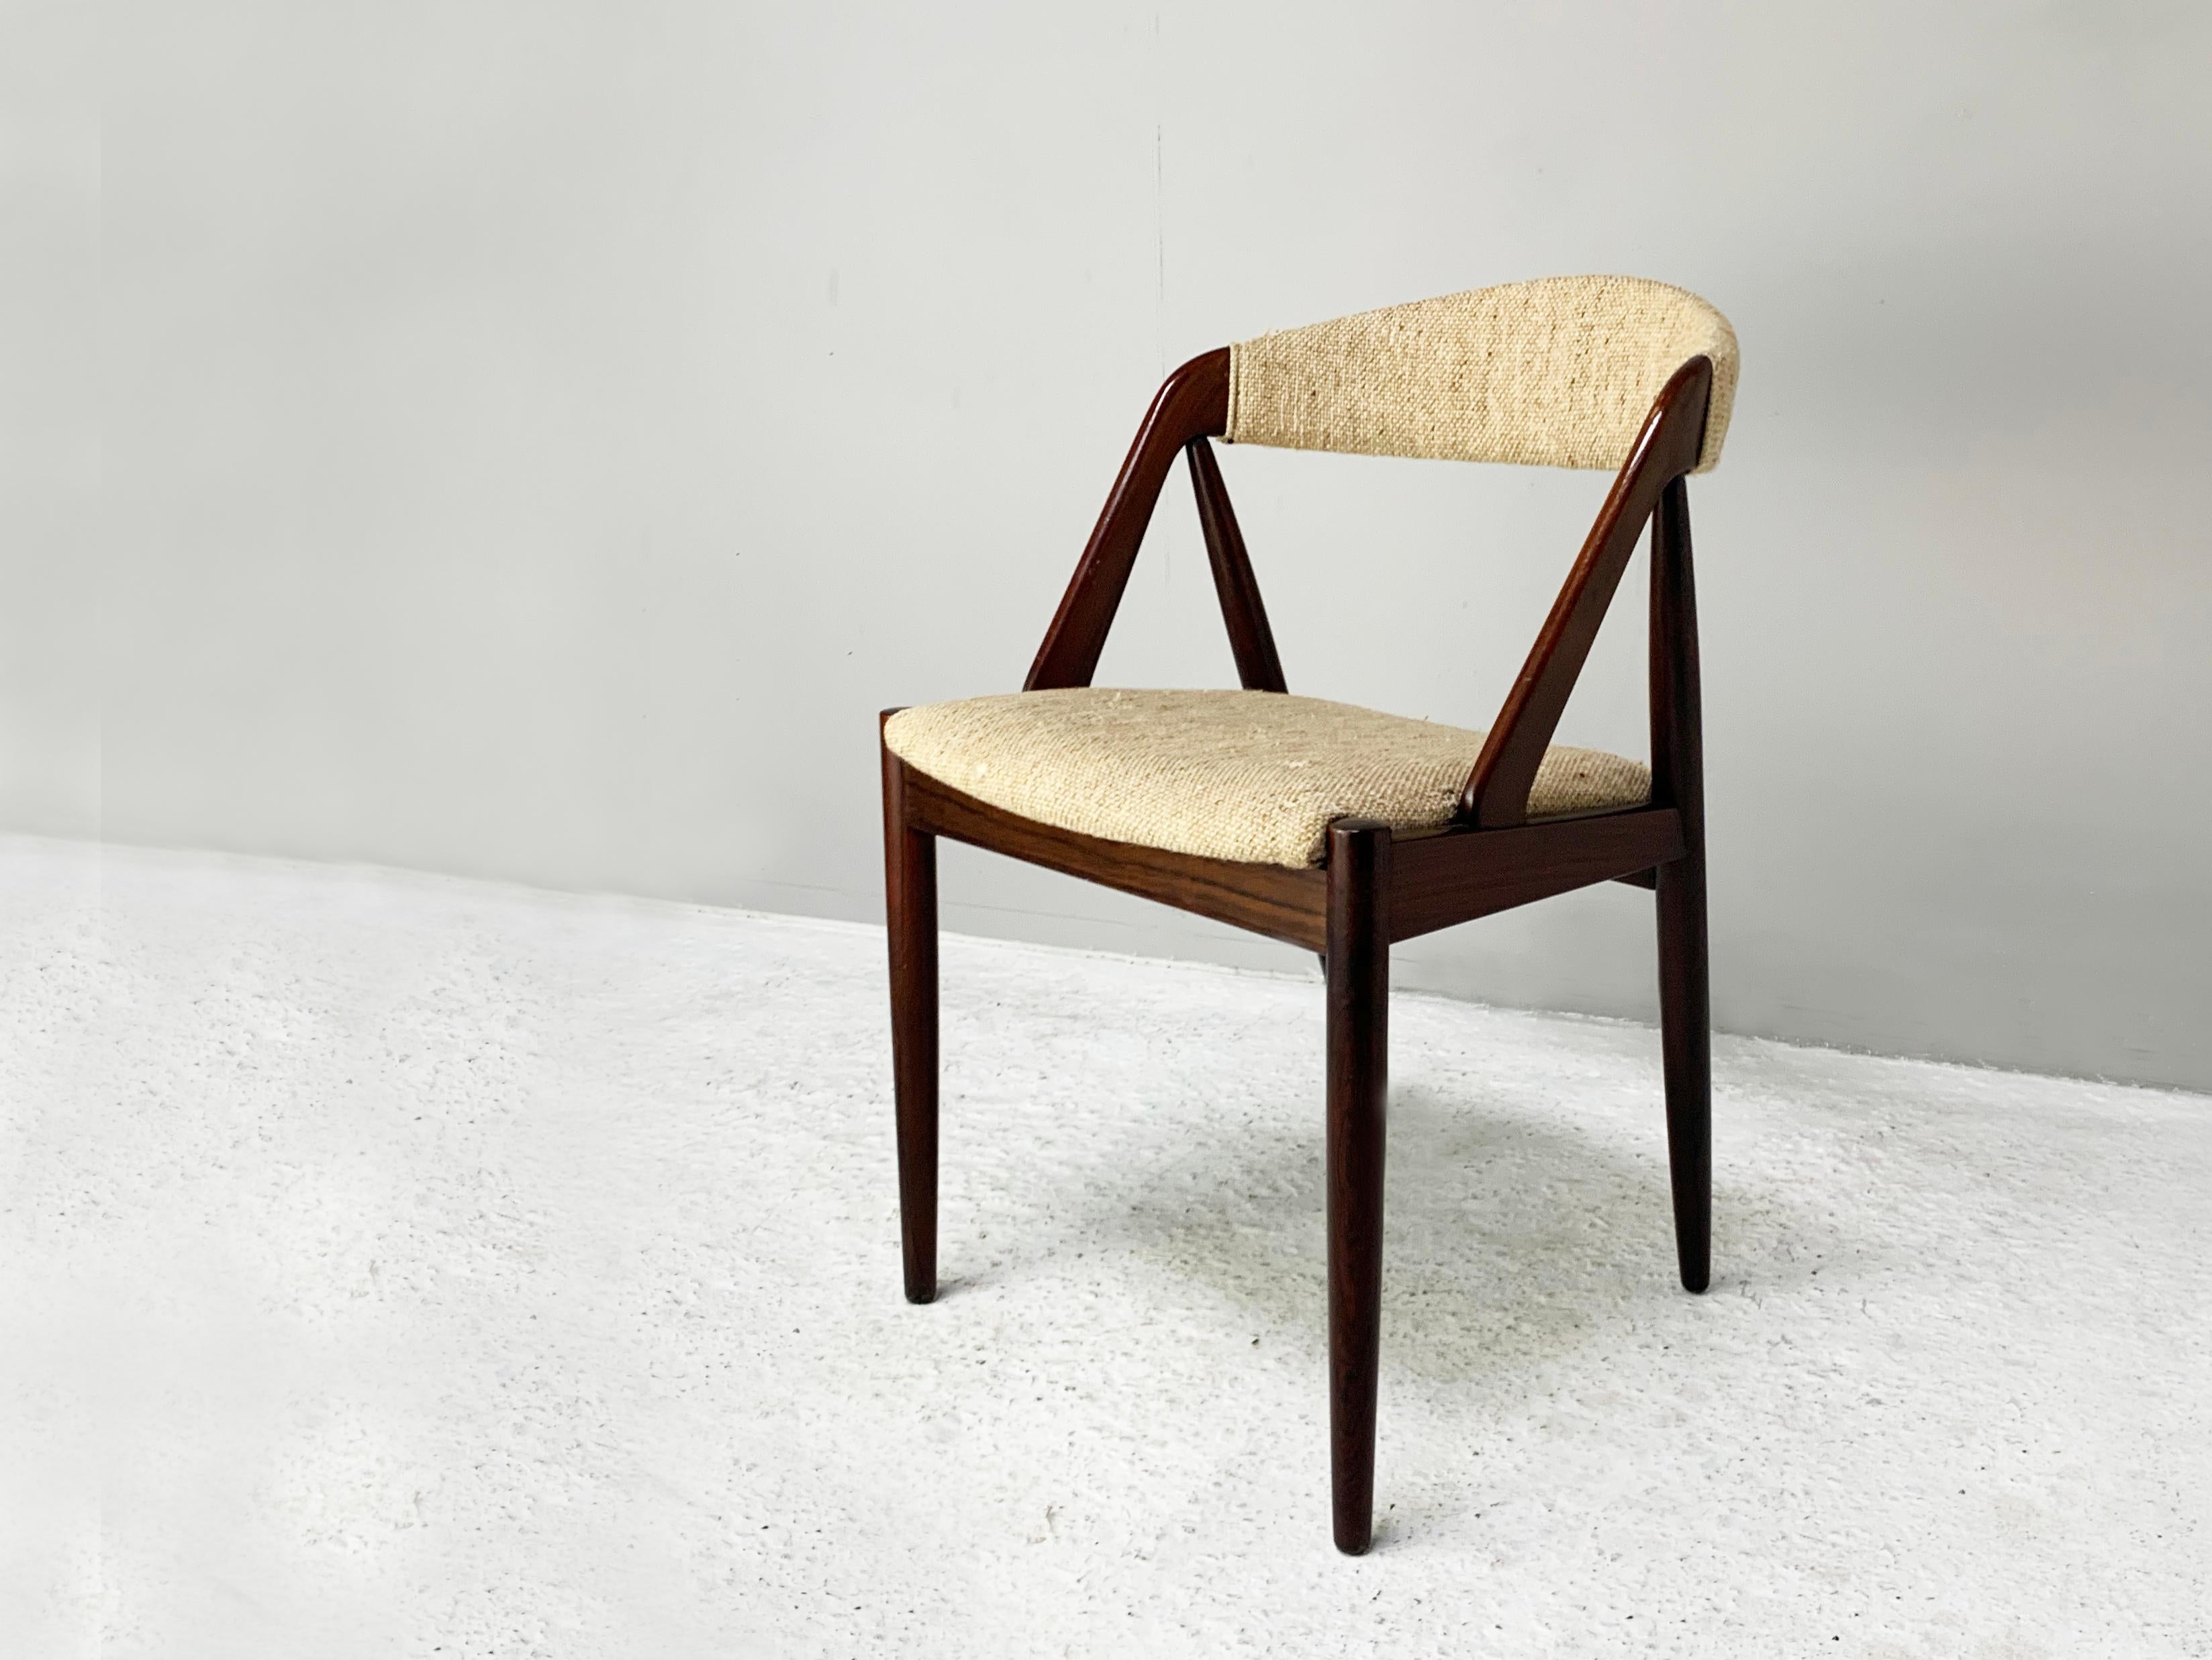 Der angegebene Preis gilt für einen Stuhl. Es sind zwei Stühle vorhanden.

Zwei Stühle des Modells 31, entworfen von Kai Kristiansen im Jahr 1956 und hergestellt von der Schou Andersen Mobelfabrik in den 1960er Jahren.

Dieser Stuhl mit seiner